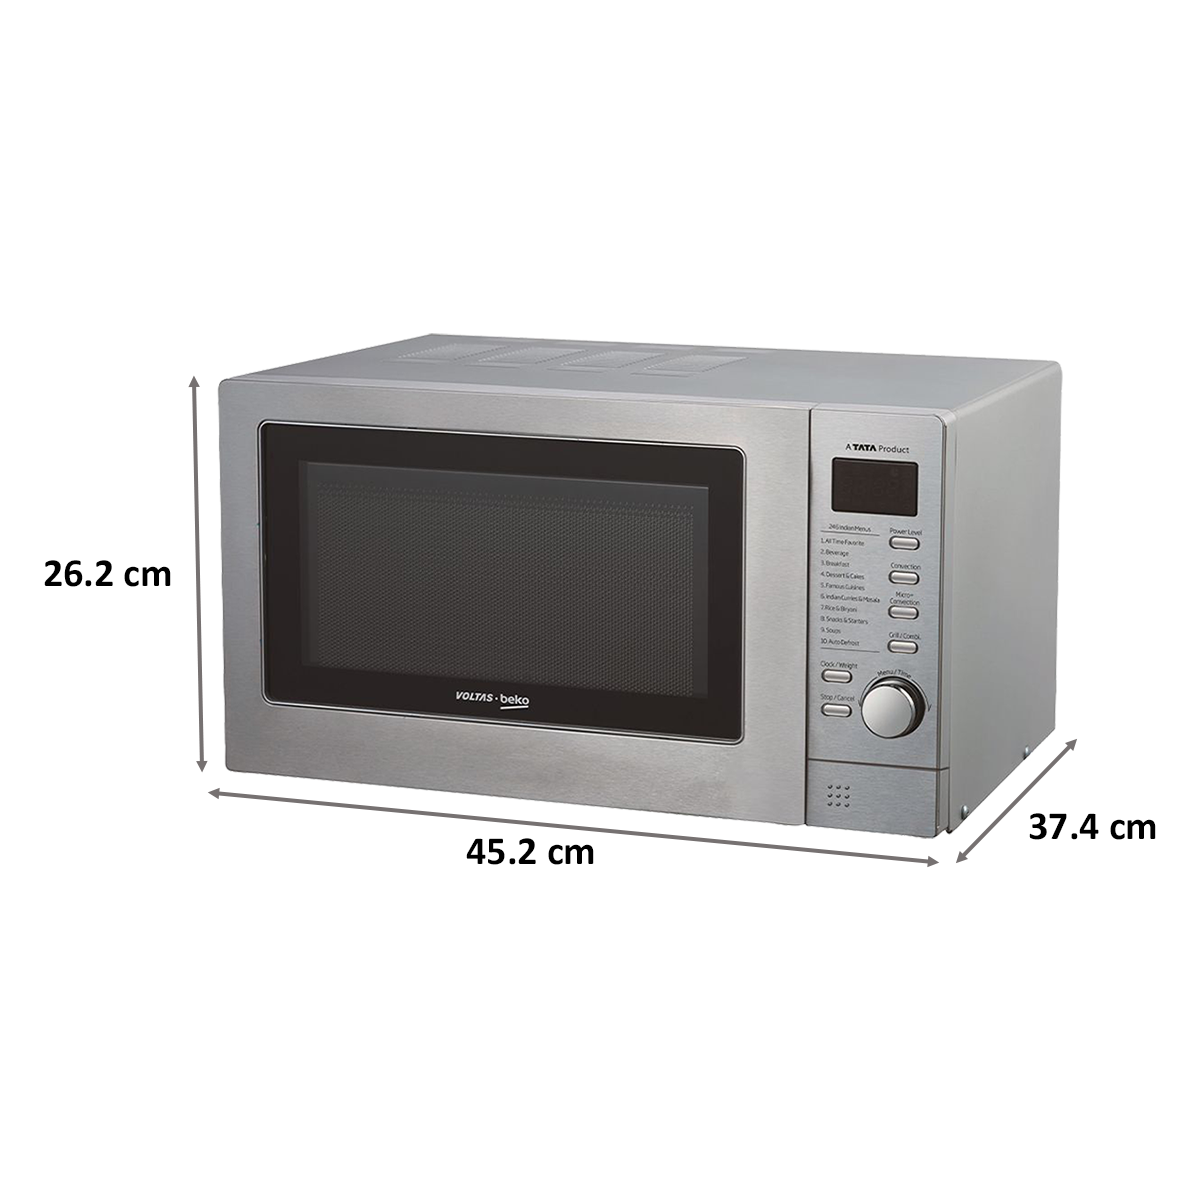 Voltas Beko 20 Litres Convection Microwave Oven (Digital Timer, MC20SD, Silver)_2